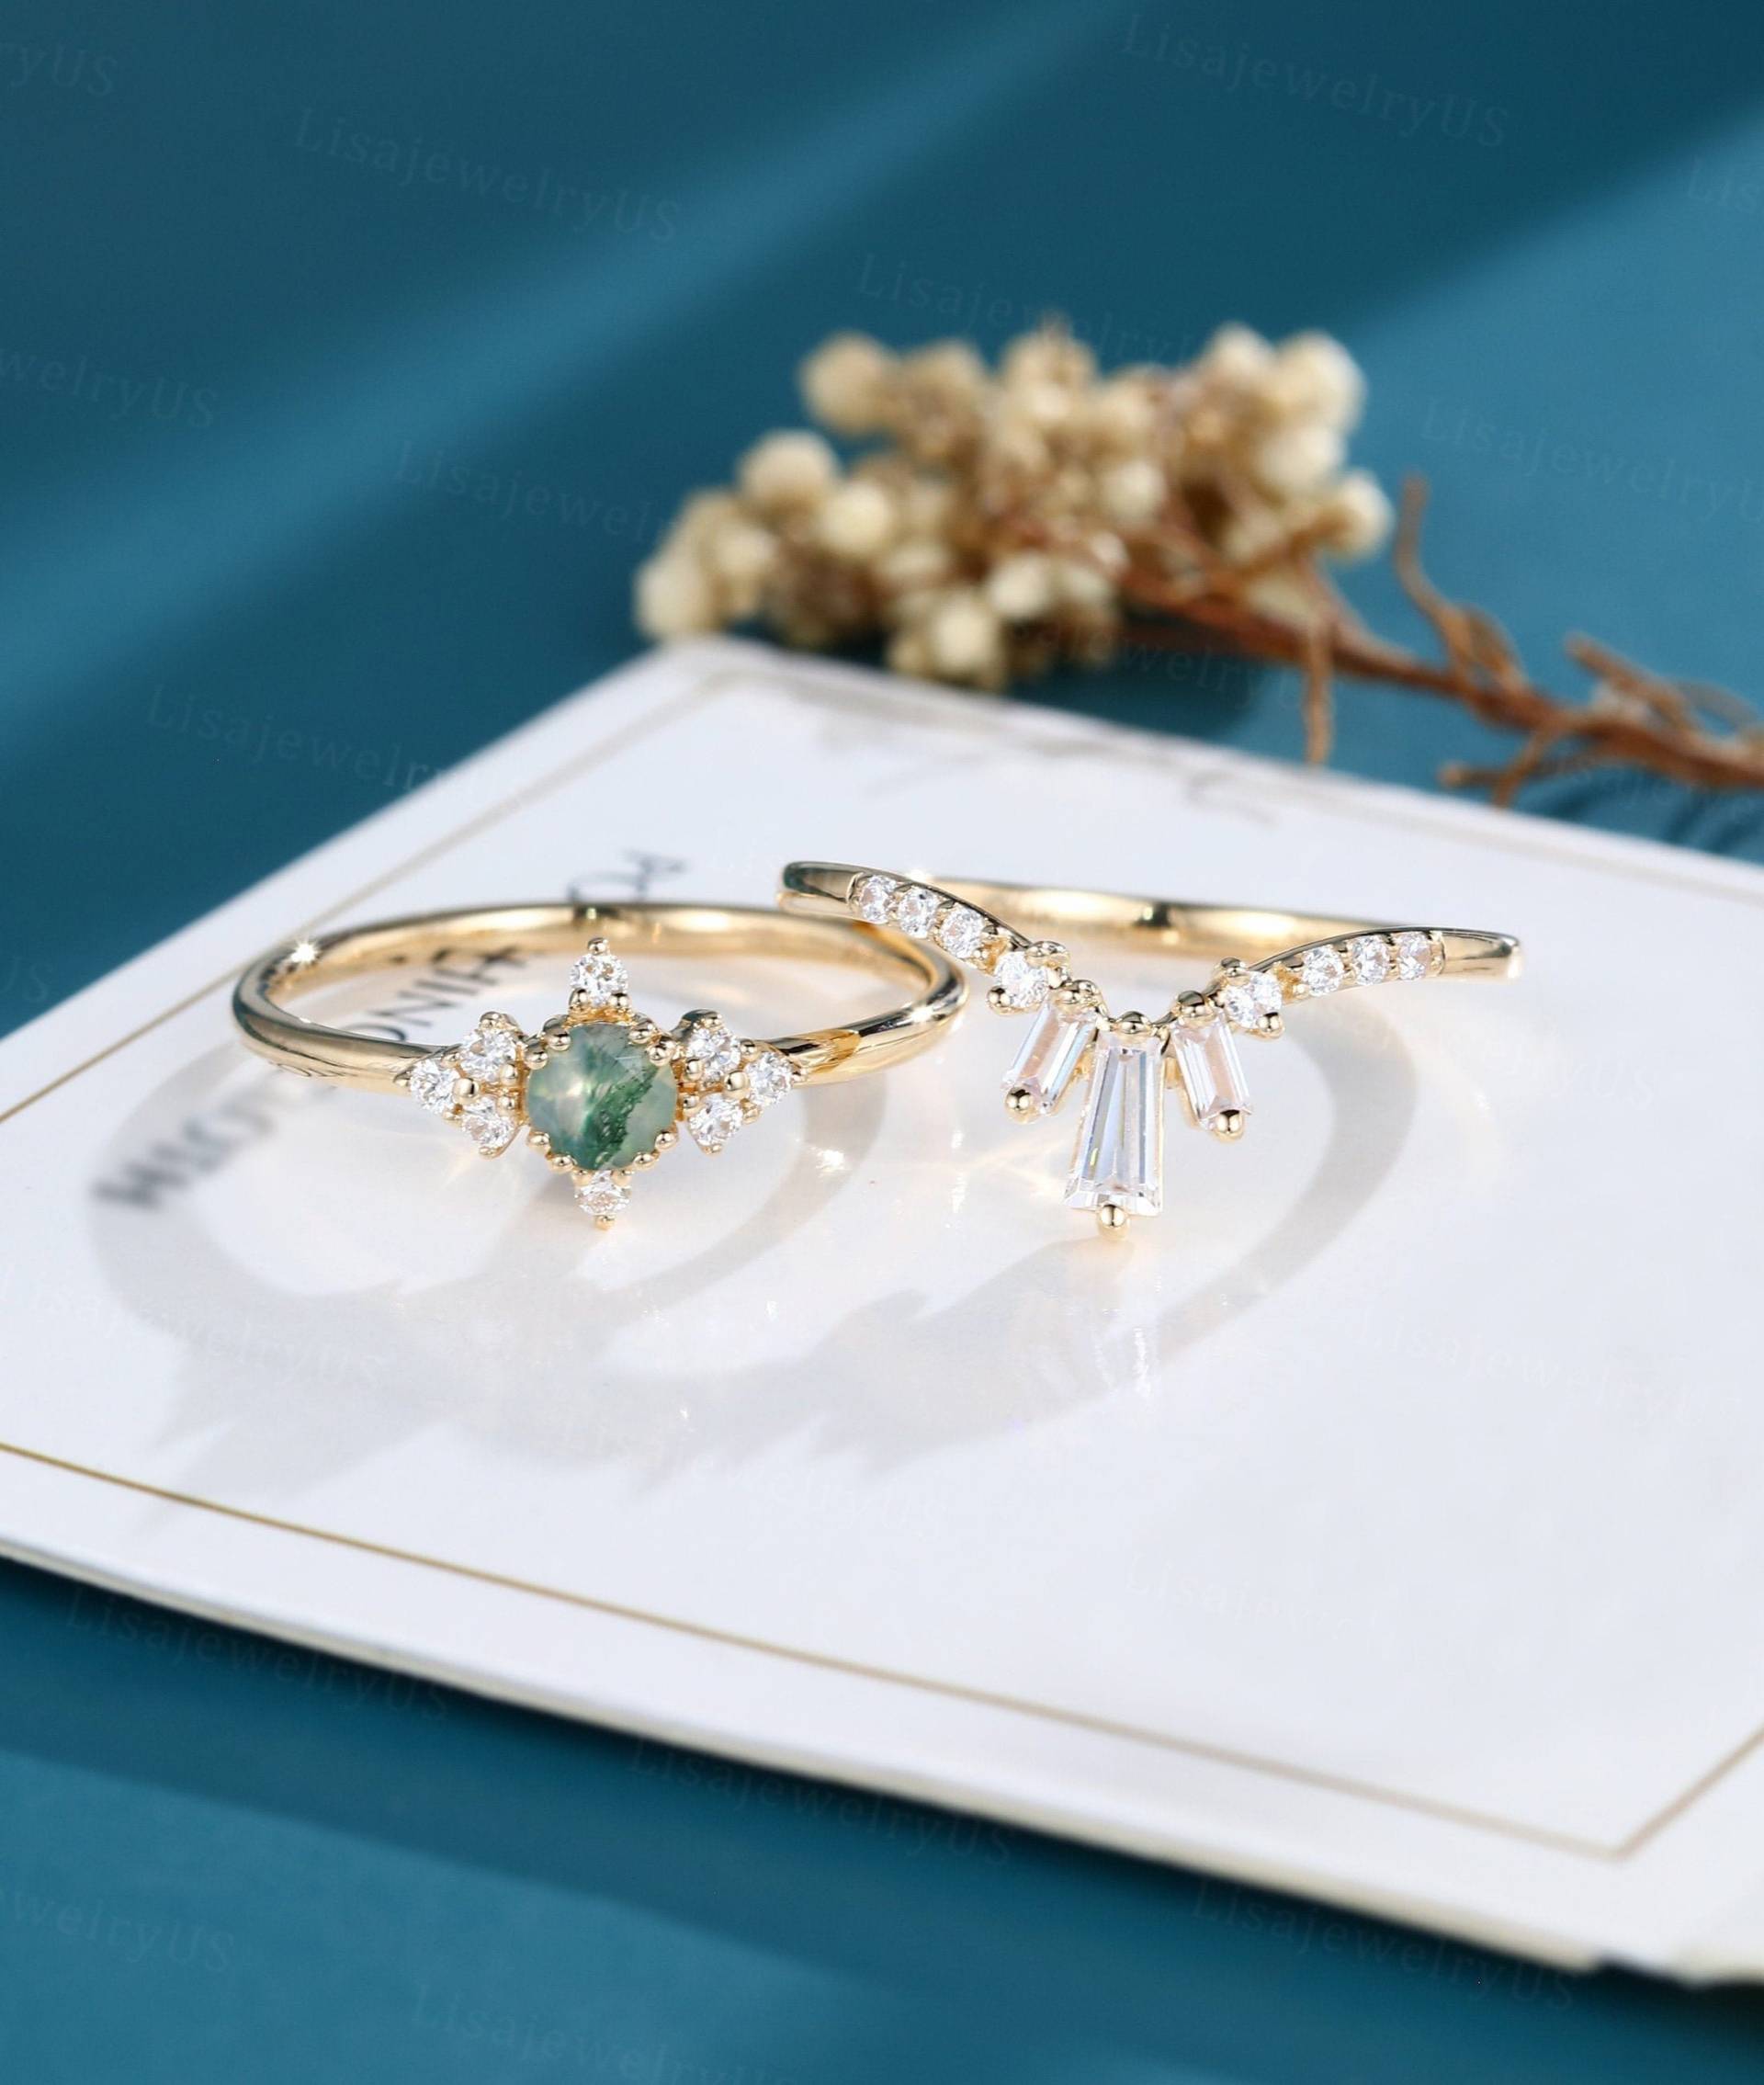 Moosachat Verlobungsring Set Vintage Massiv 14K Gold Art Deco Zierliches Unikat Cz von LisajewelryUS